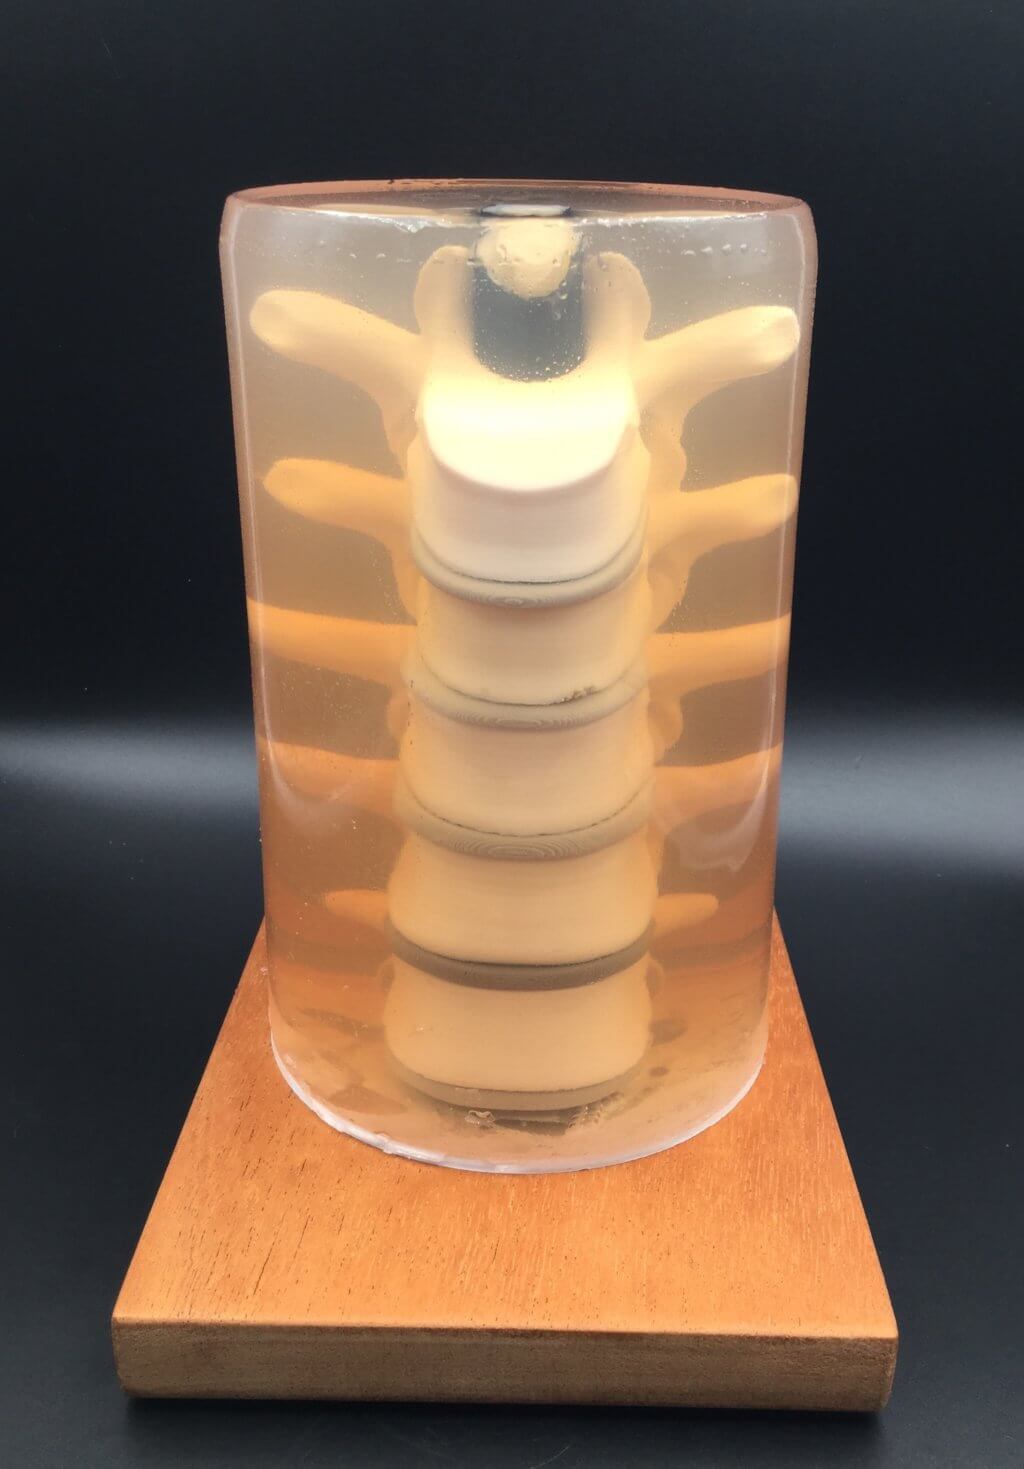 3D printed spine in gelatin enclosure